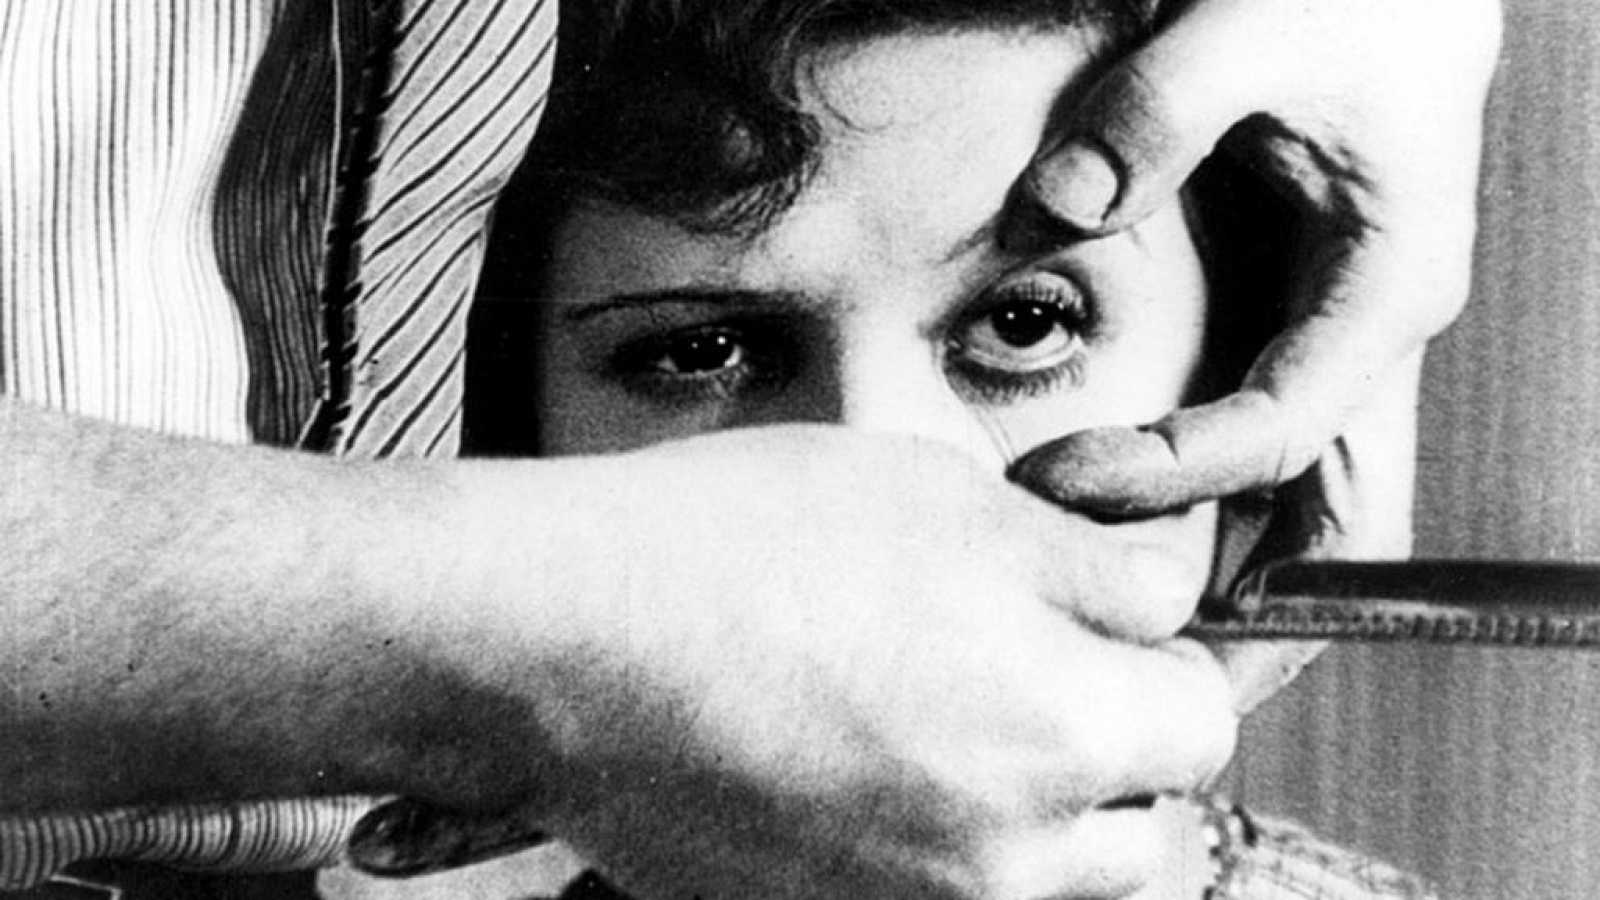 La poesía visual de Luis Buñuel